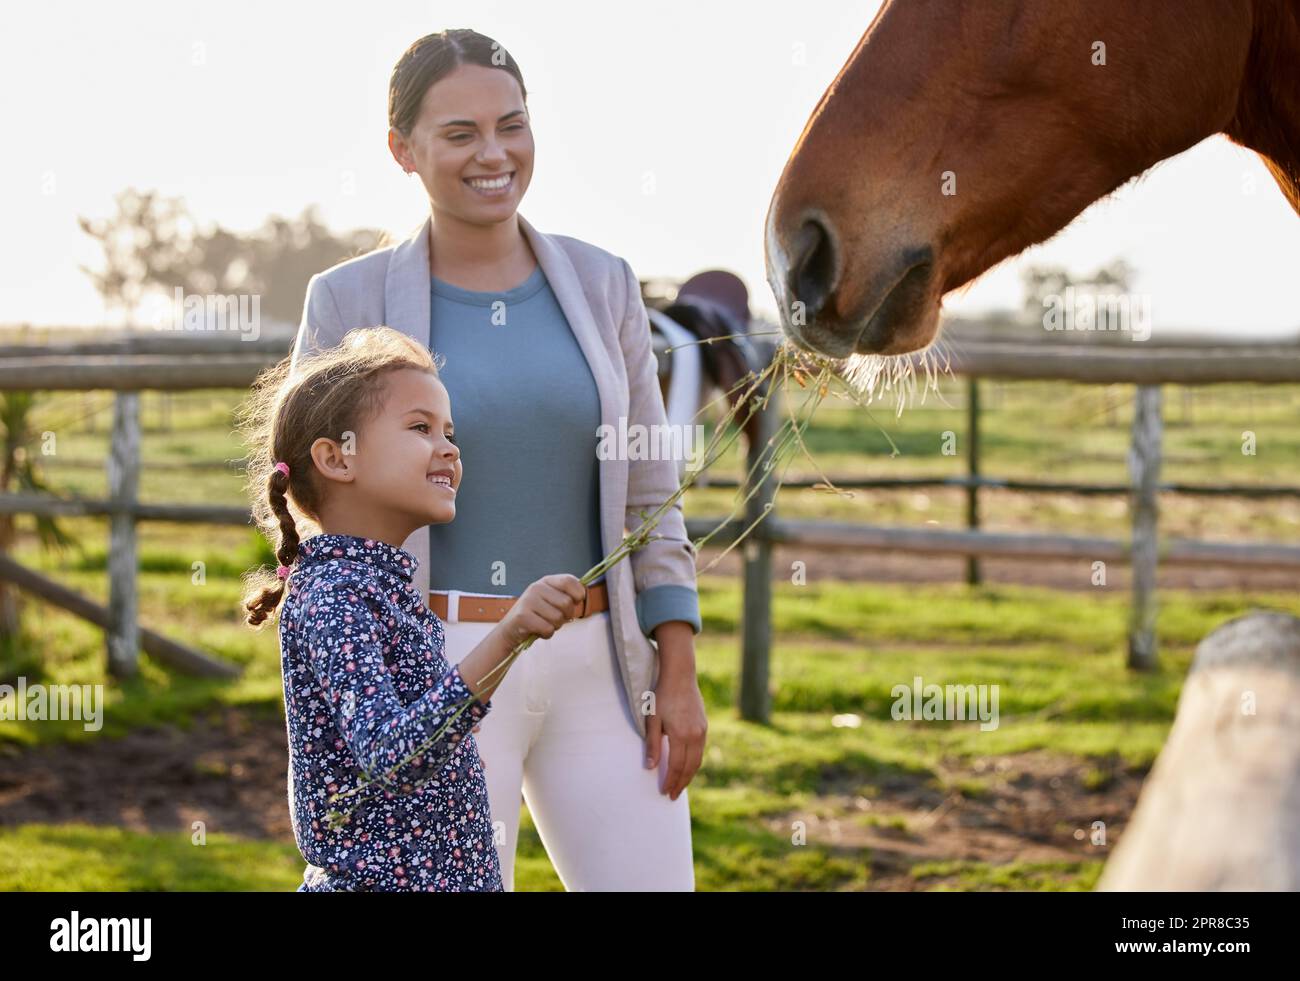 Hey horsey, je vous ai pris un snack. Une adorable petite fille qui nourrit un cheval dans sa ferme pendant que sa mère regarde. Banque D'Images